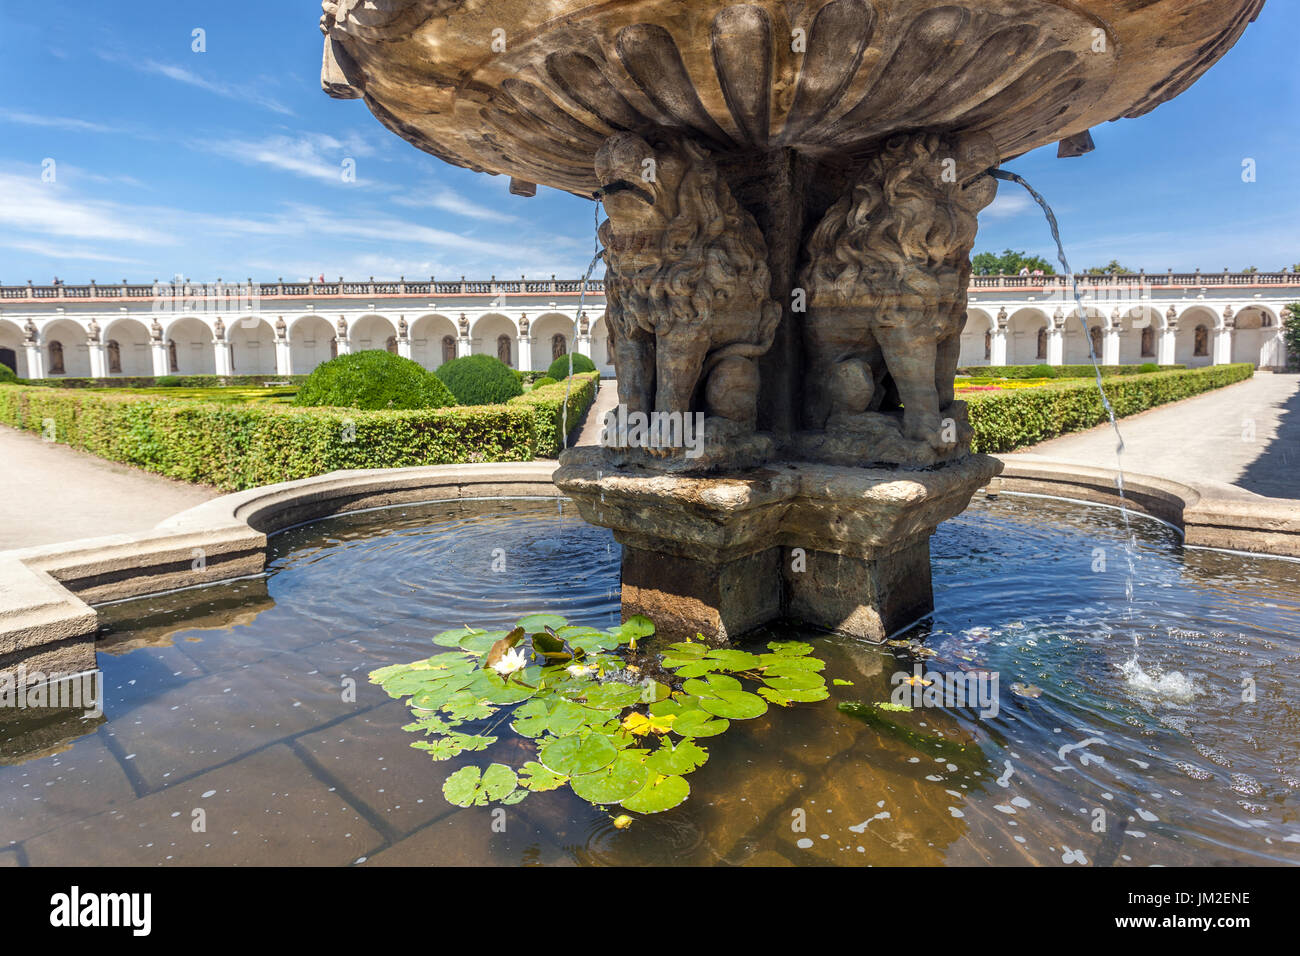 Giardino di Kromeriz, fontana barocca nel giardino di piacere Kromeriz Repubblica Ceca, patrimonio dell'umanità dell'UNESCO Foto Stock